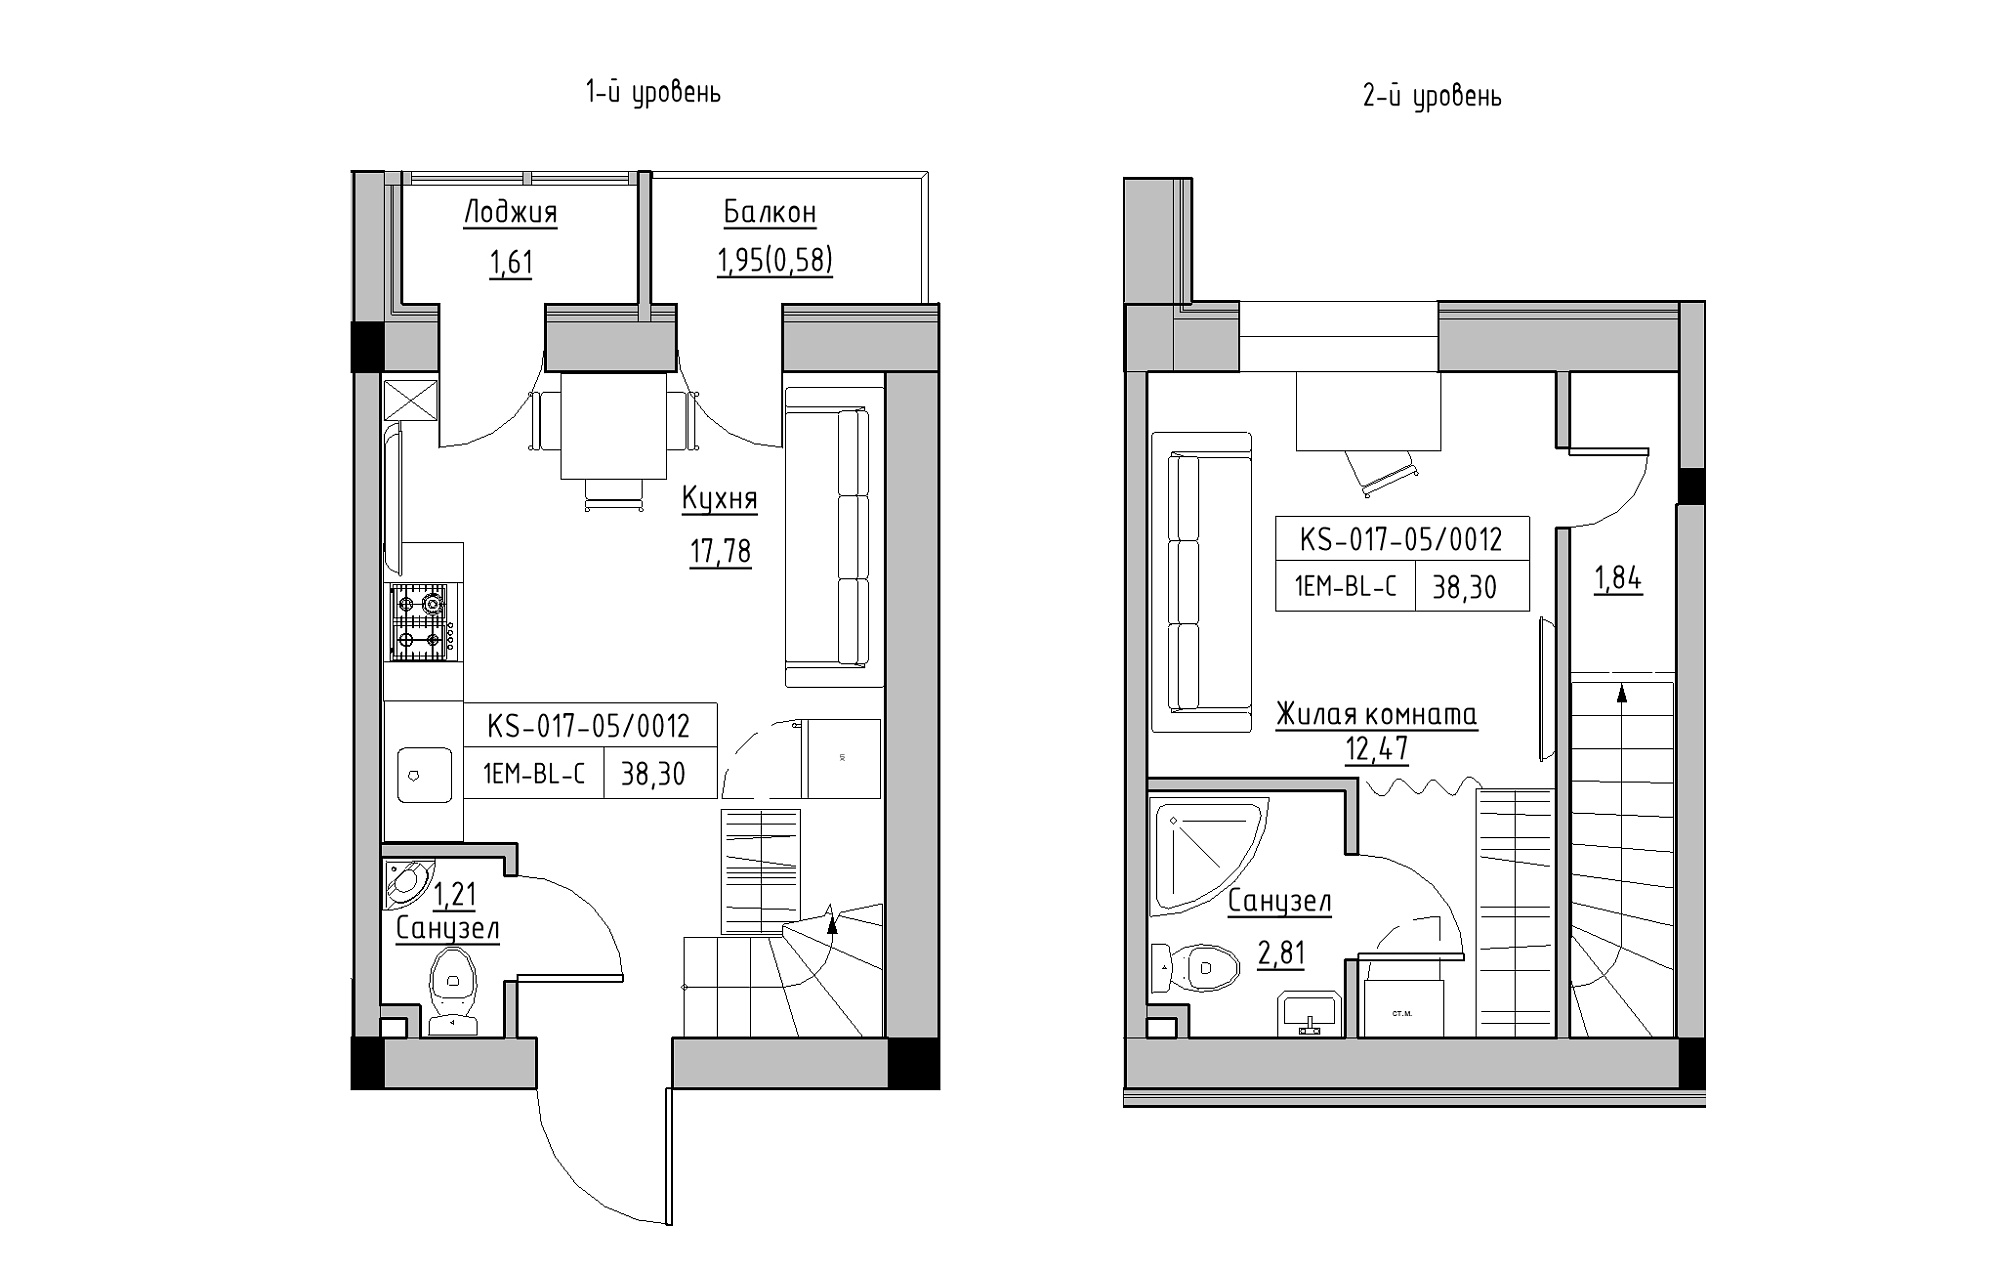 Planning 2-lvl flats area 38.3m2, KS-017-05/0012.